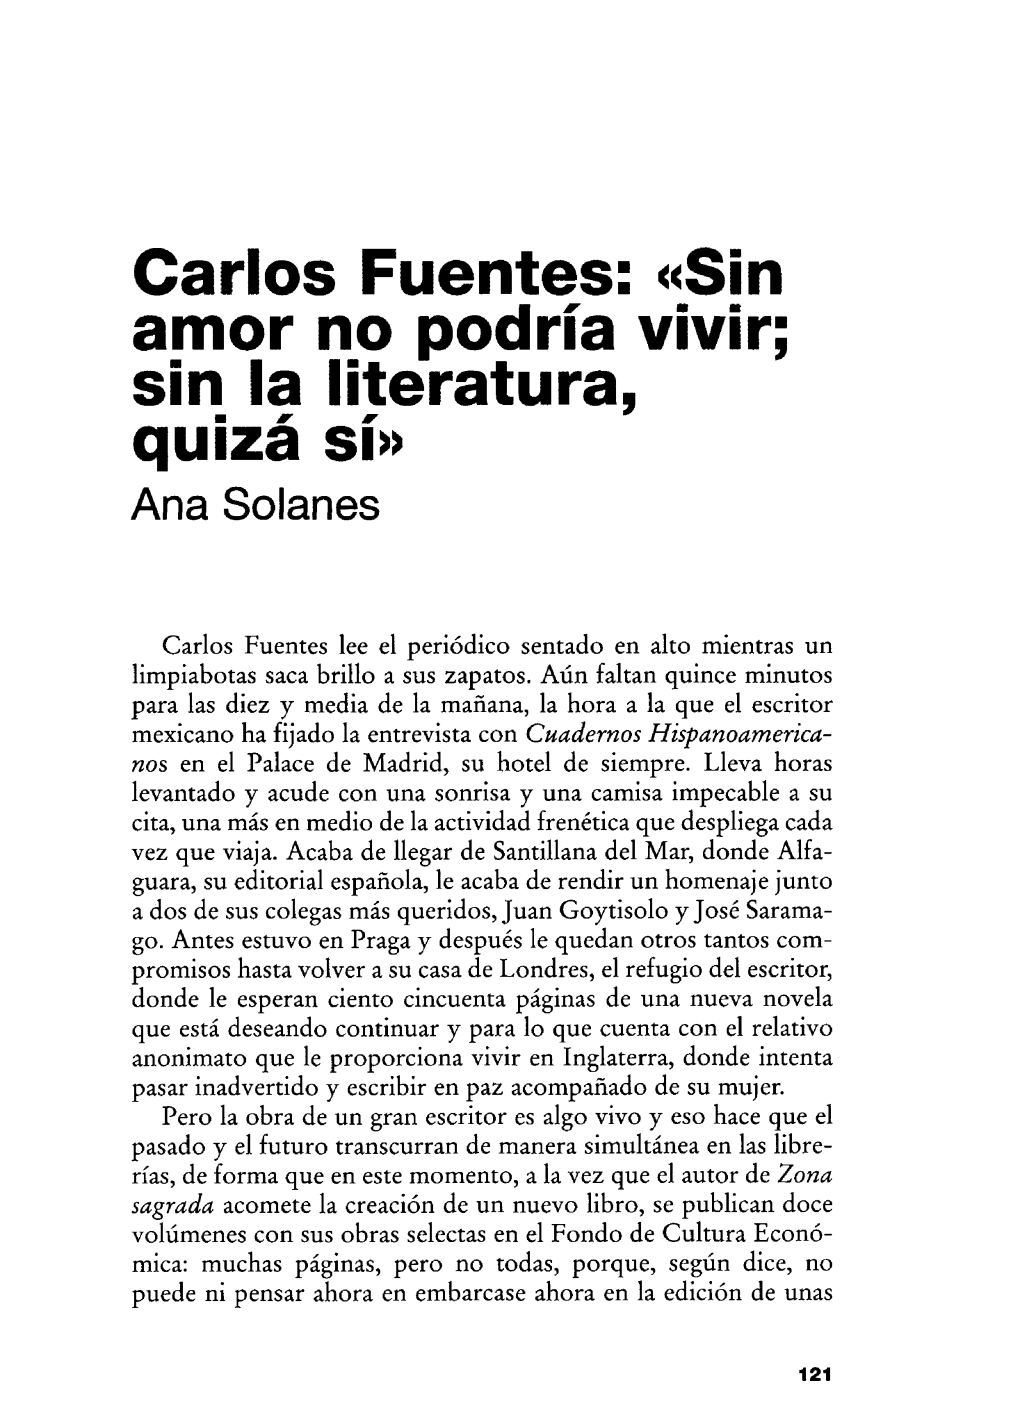 Carlos Fuentes : "Sin Amor No Podría Vivir; Sin La Literatura, Quizá